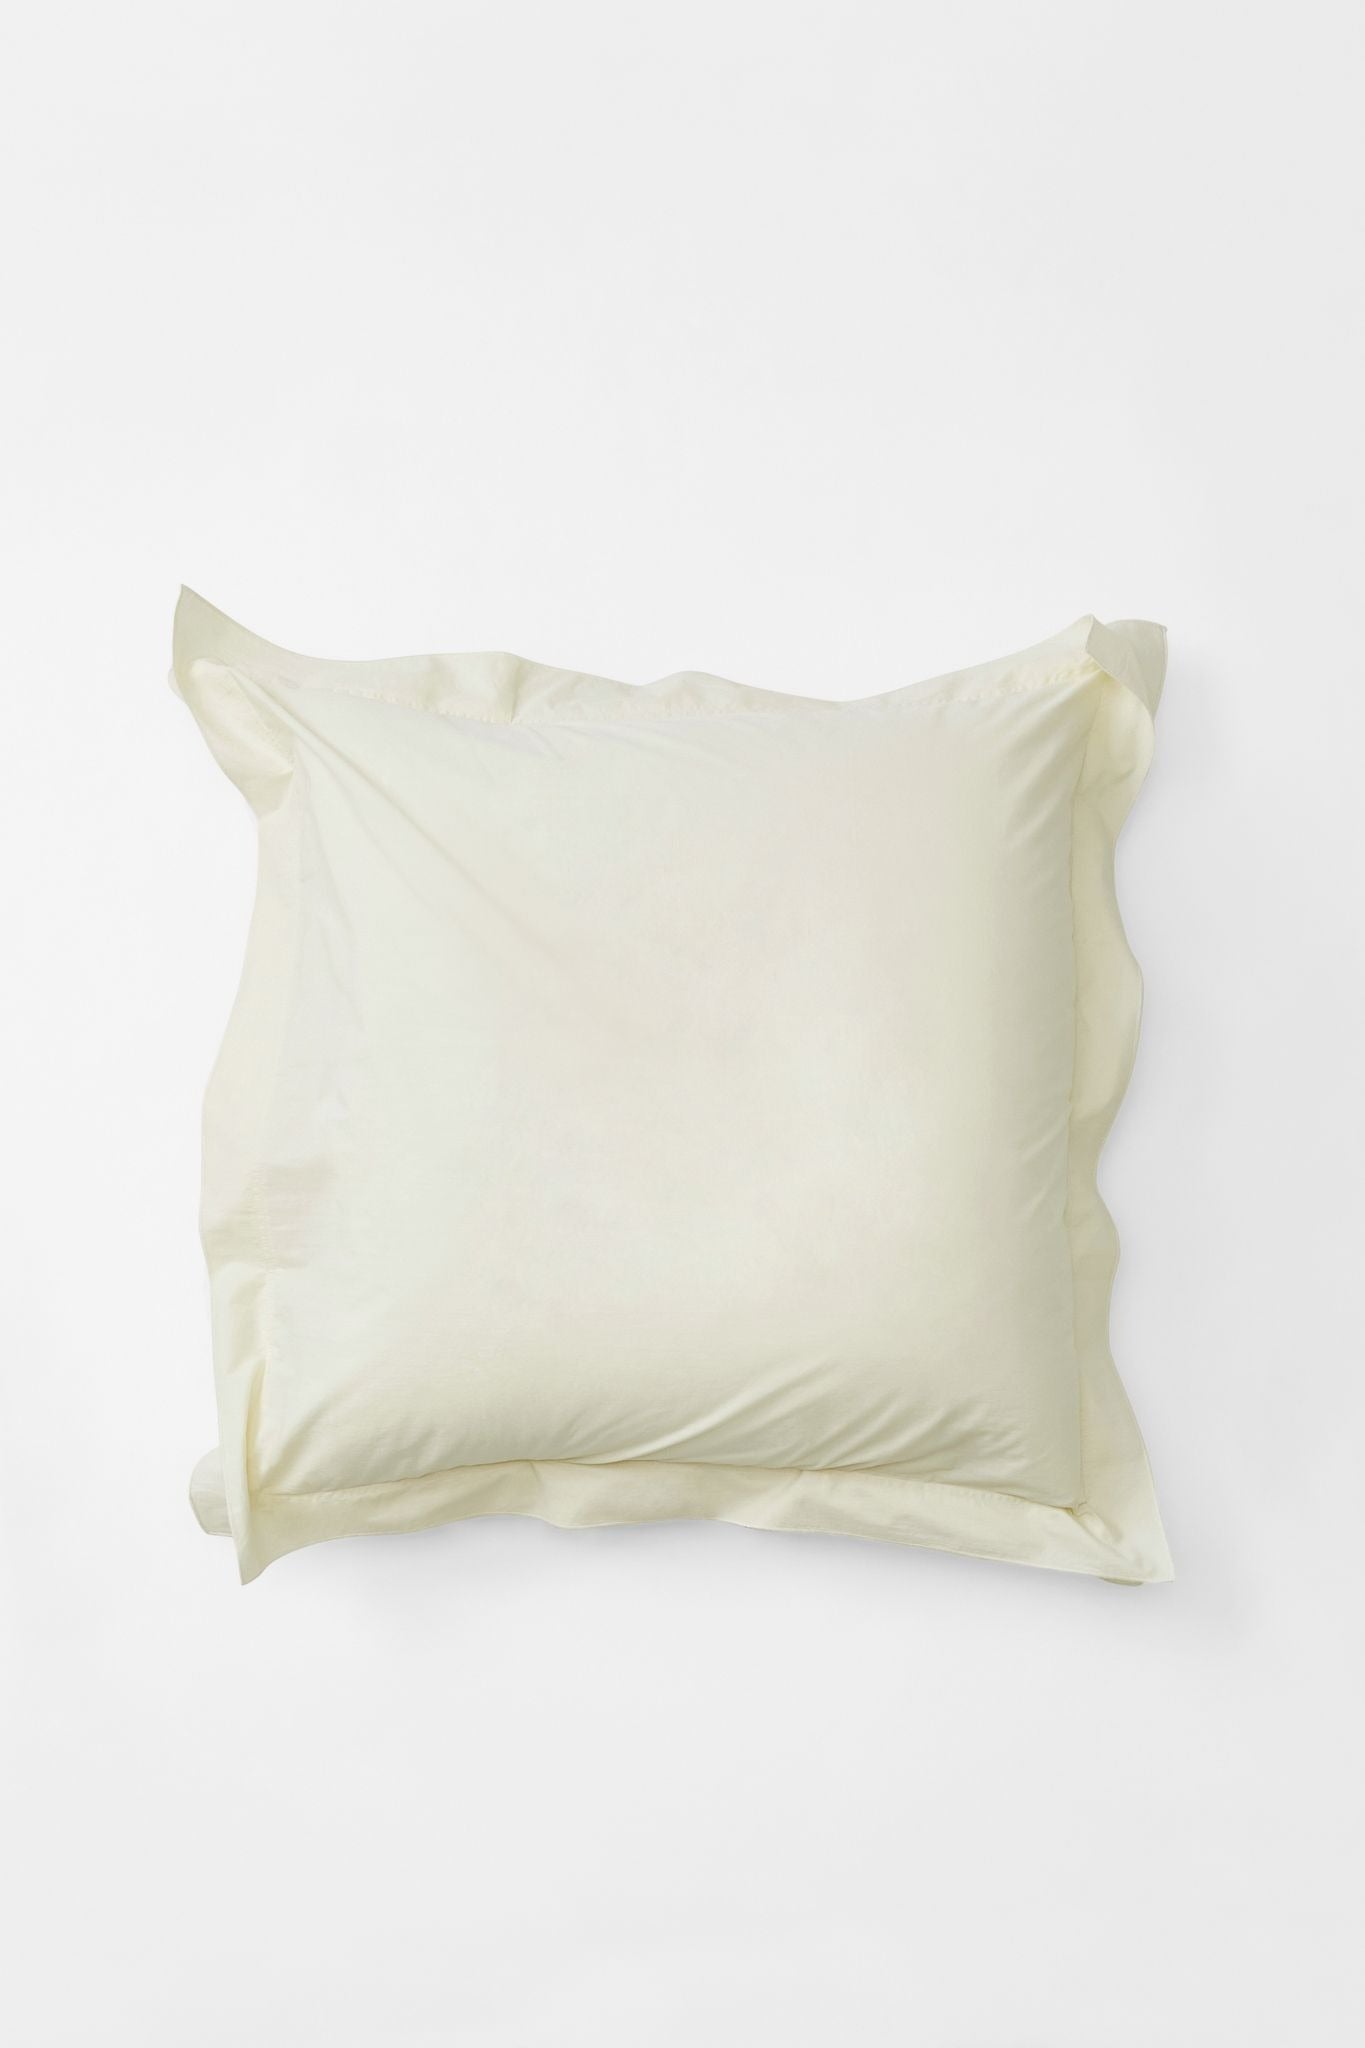 Mono Organic Cotton Percale Pillow Pair - Canvas Pillows in Euro Pillow